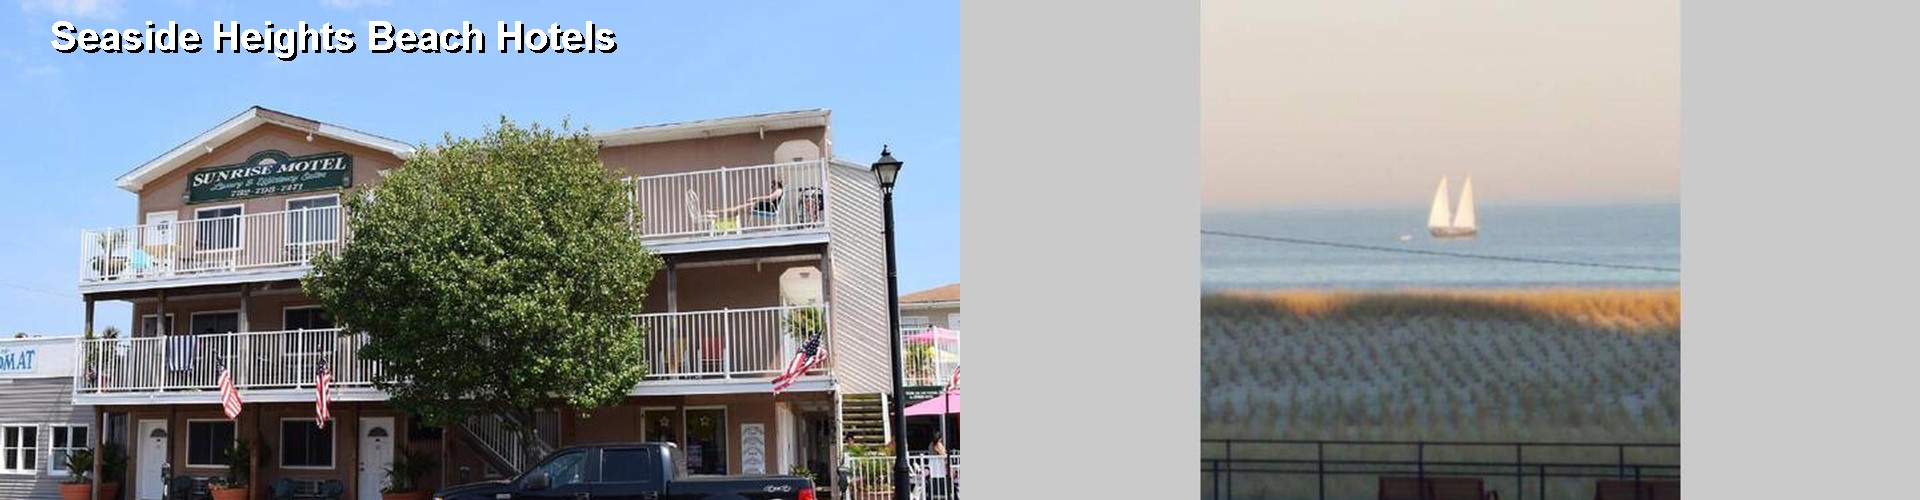 3 Best Hotels near Seaside Heights Beach